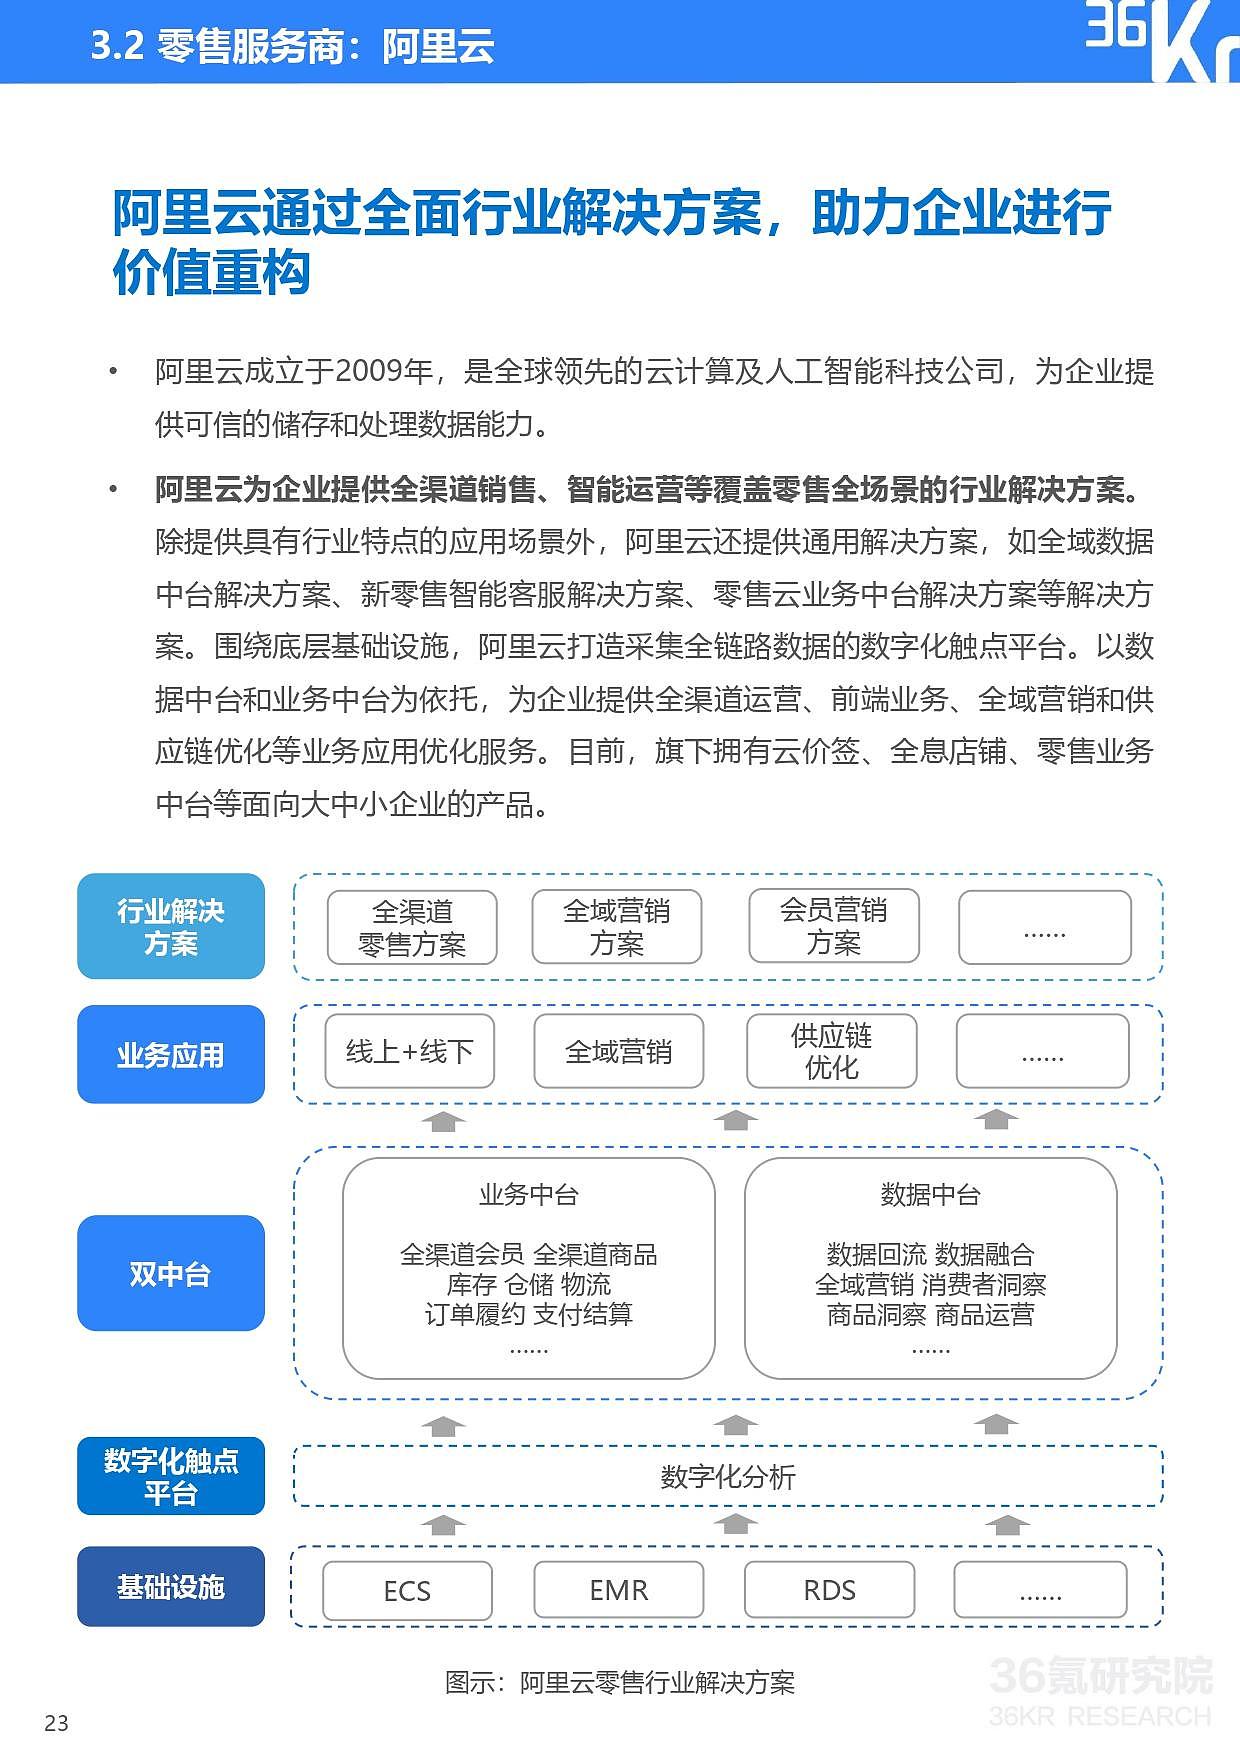 36氪研究院 | 2021年中国零售OMO研究报告 - 24